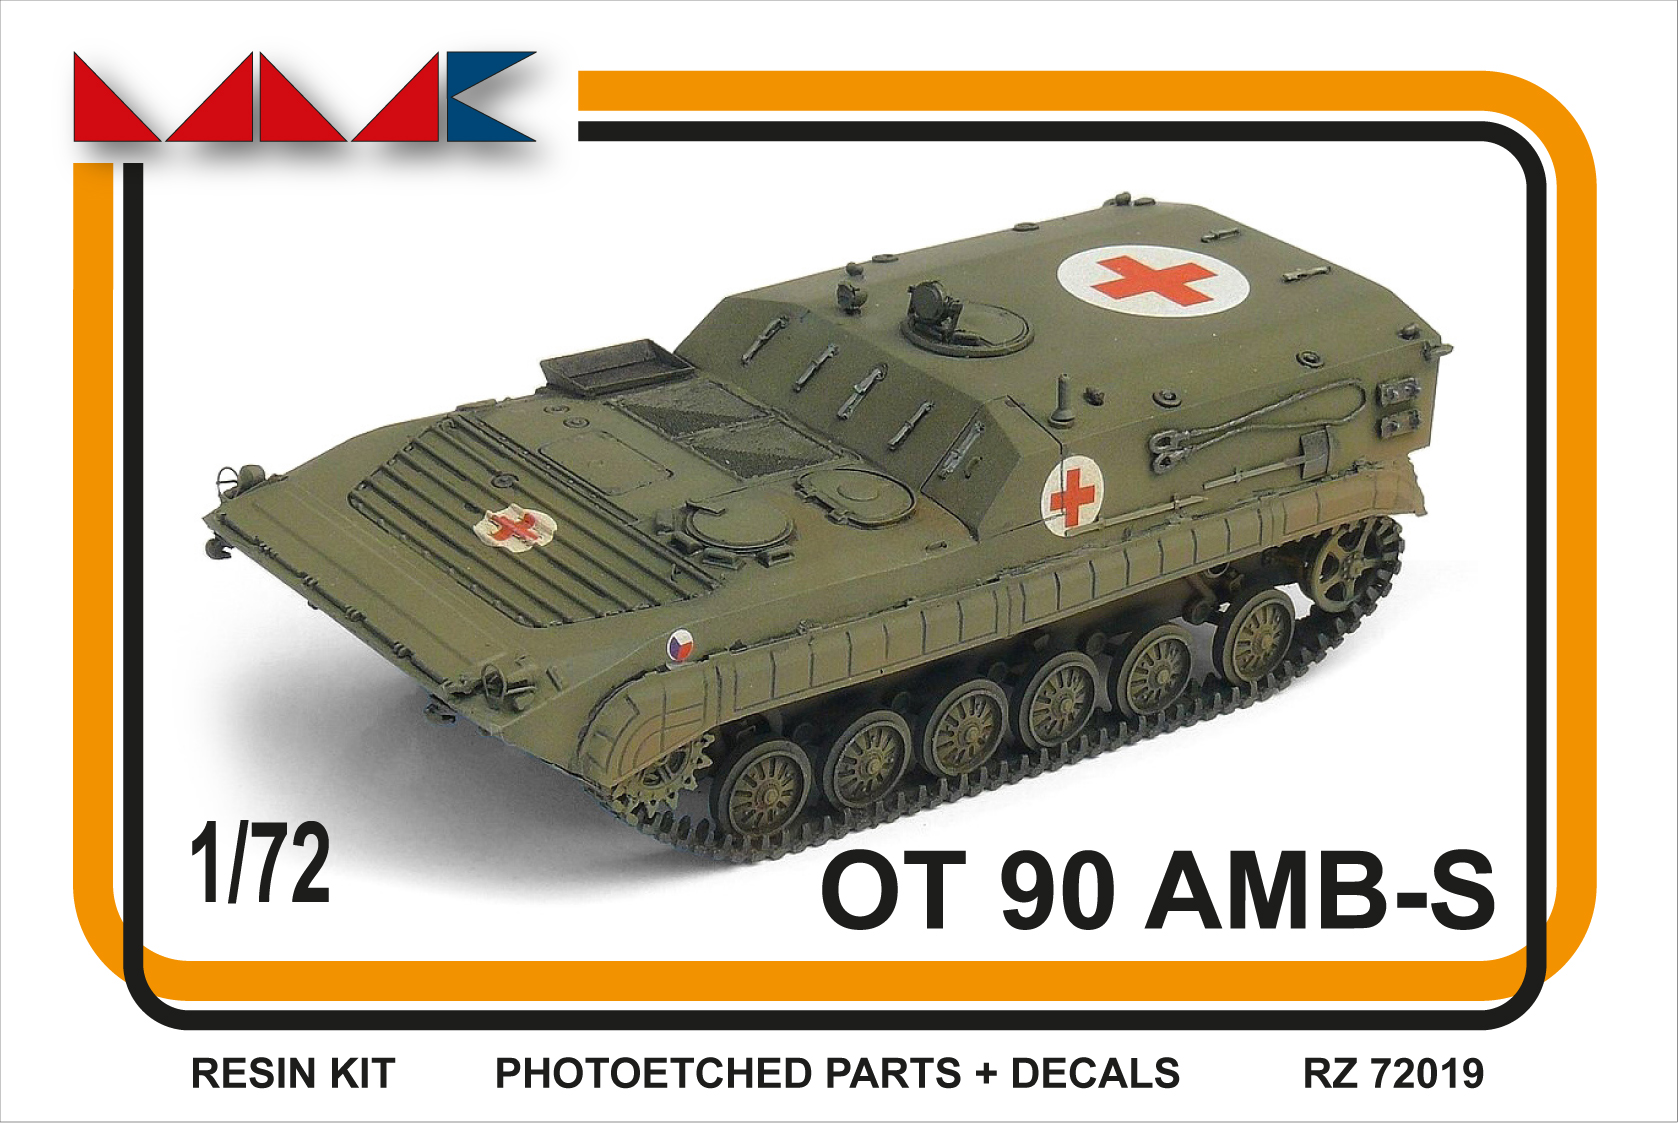 OT-90 AMB-S